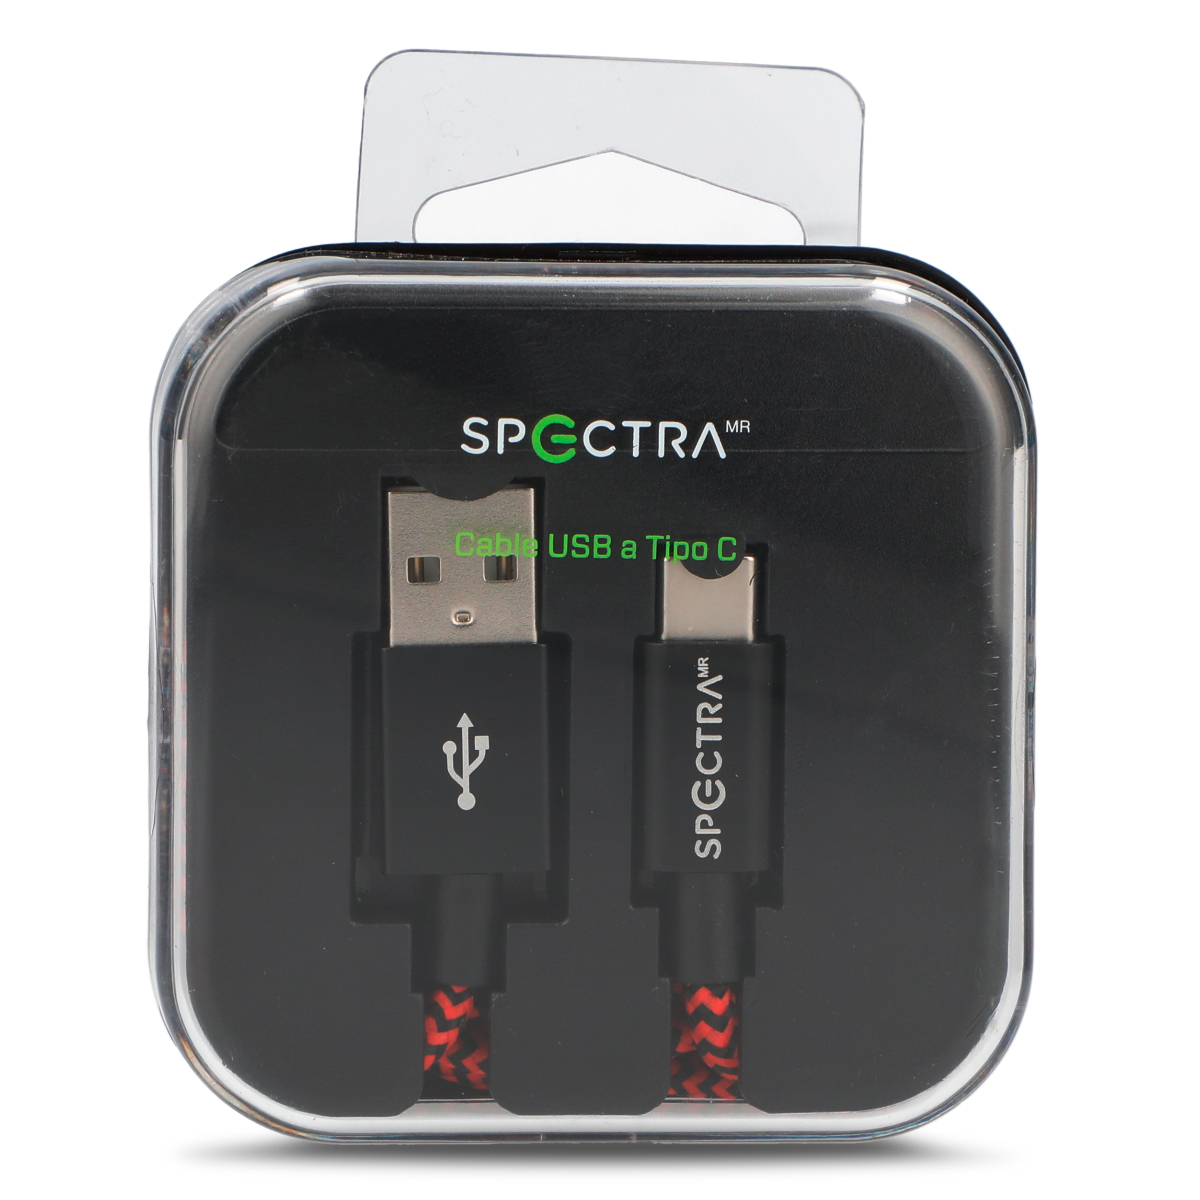 Cable USB a Tipo C Spectra 1 m Negro con rojo